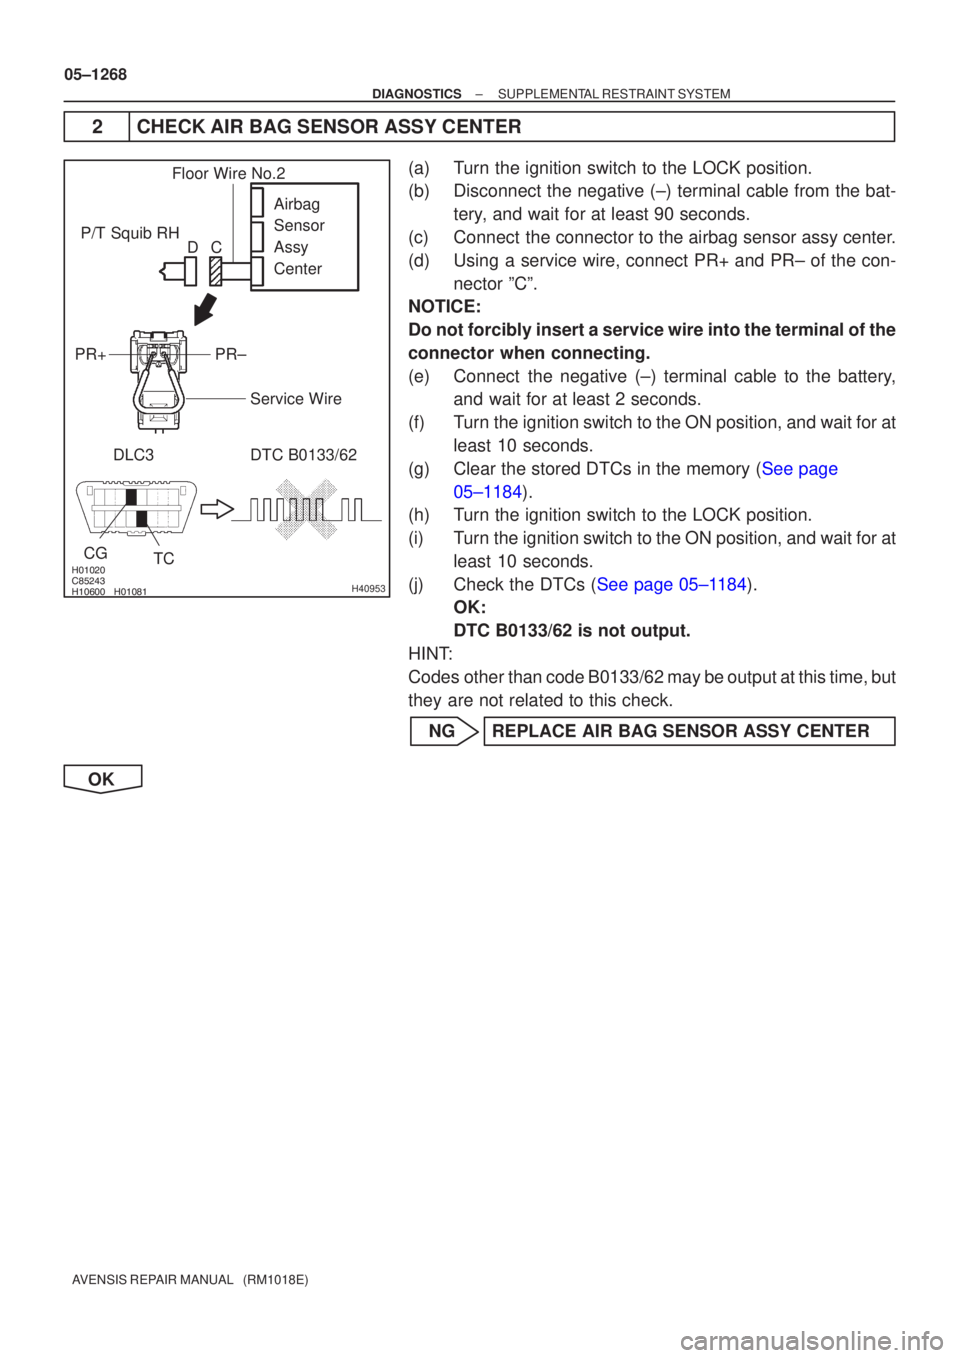 TOYOTA AVENSIS 2005  Service Repair Manual 

	\b

 
\b
H40953
P/T Squib RHDLC3 DTC B0133/62 TC
CG
Airbag 
Sensor 
Assy 
Center
PR±
PR+
Floor Wire No.2
Service Wire
C
D
05±1268
±
DIAGNOSTICS SUPPLEMENTAL RESTRAINT SYSTEM
AV